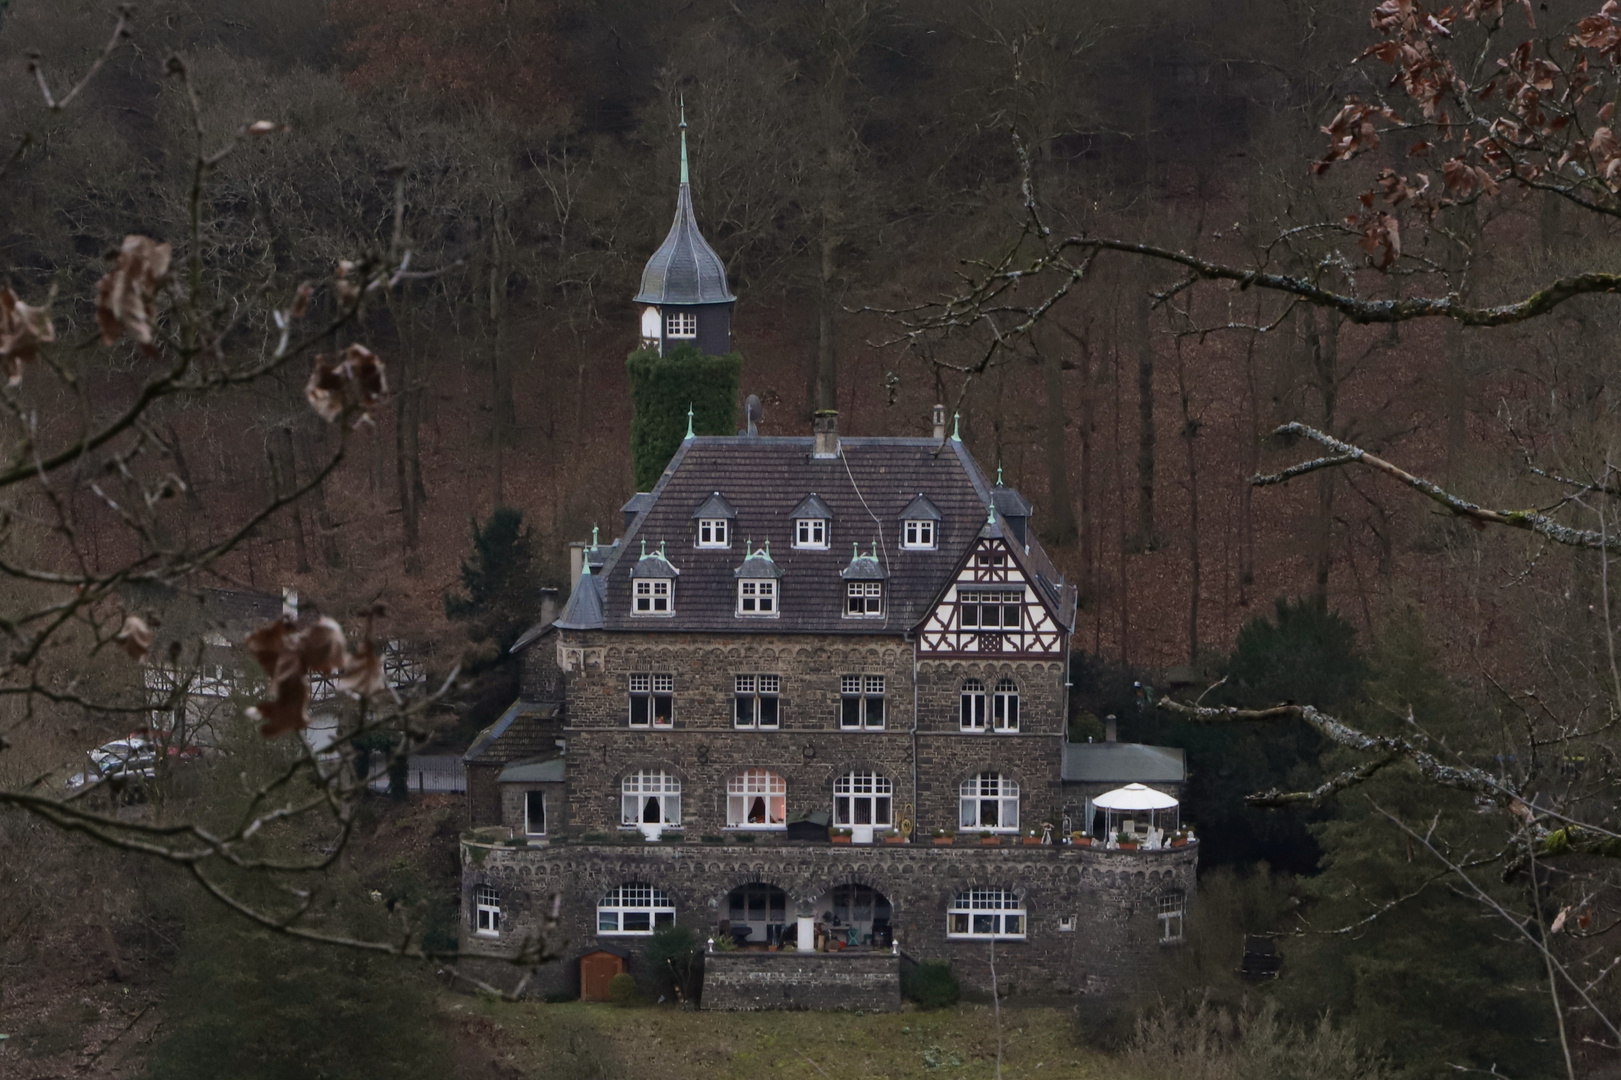 Villa in Altena (Westfalen) (2019_03_07_EOS 6D Mark II_0520_ji)